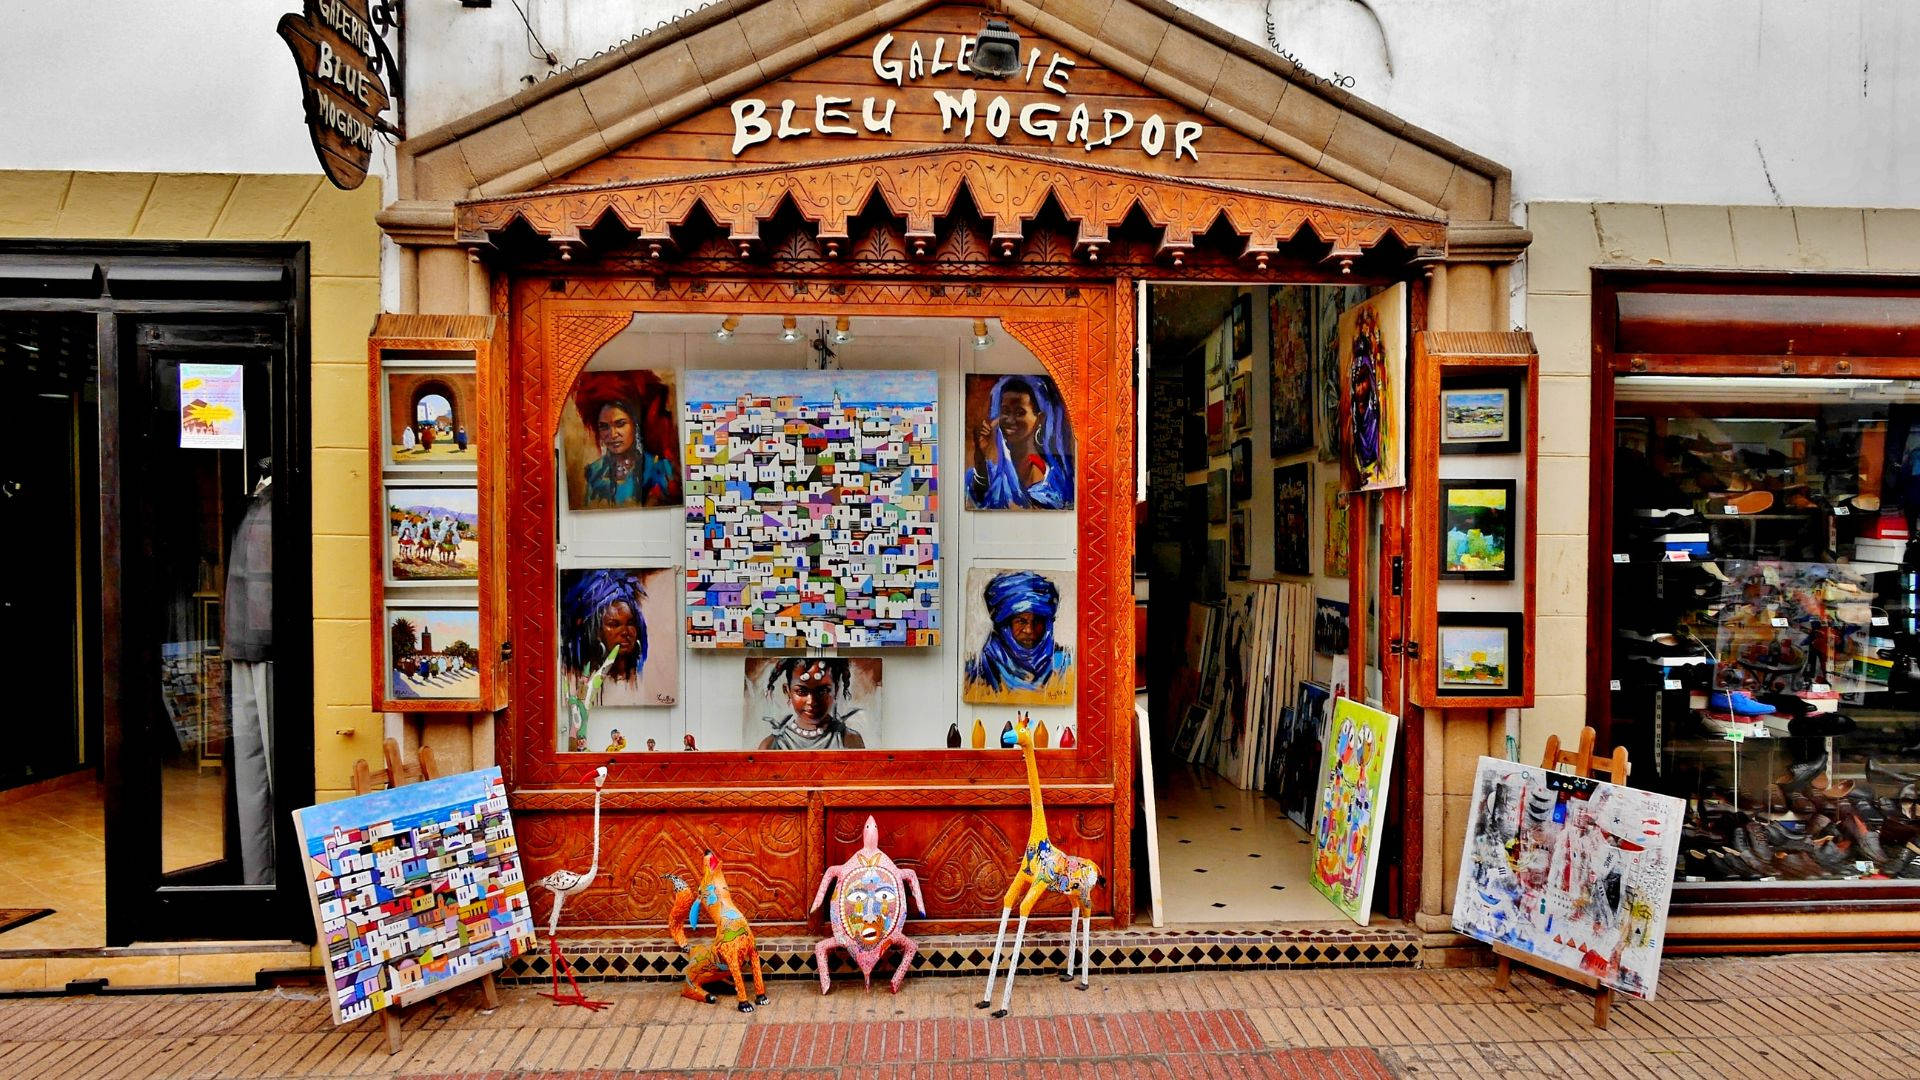 Gallery Shop Bleu Mogador Morocco Wallpaper